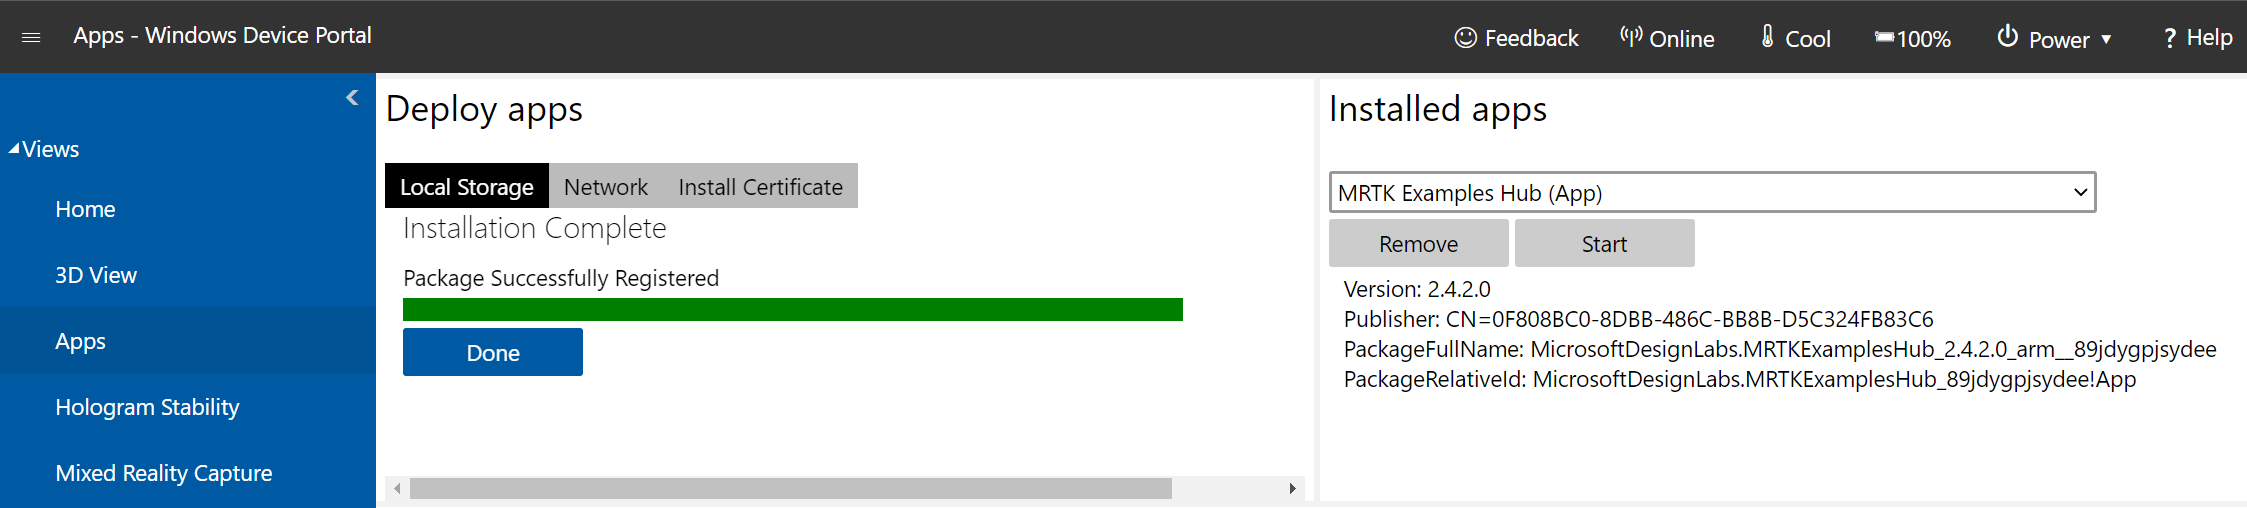 Снимок экрана: страница диспетчера приложений на портале устройств Windows с данными об успешной установке